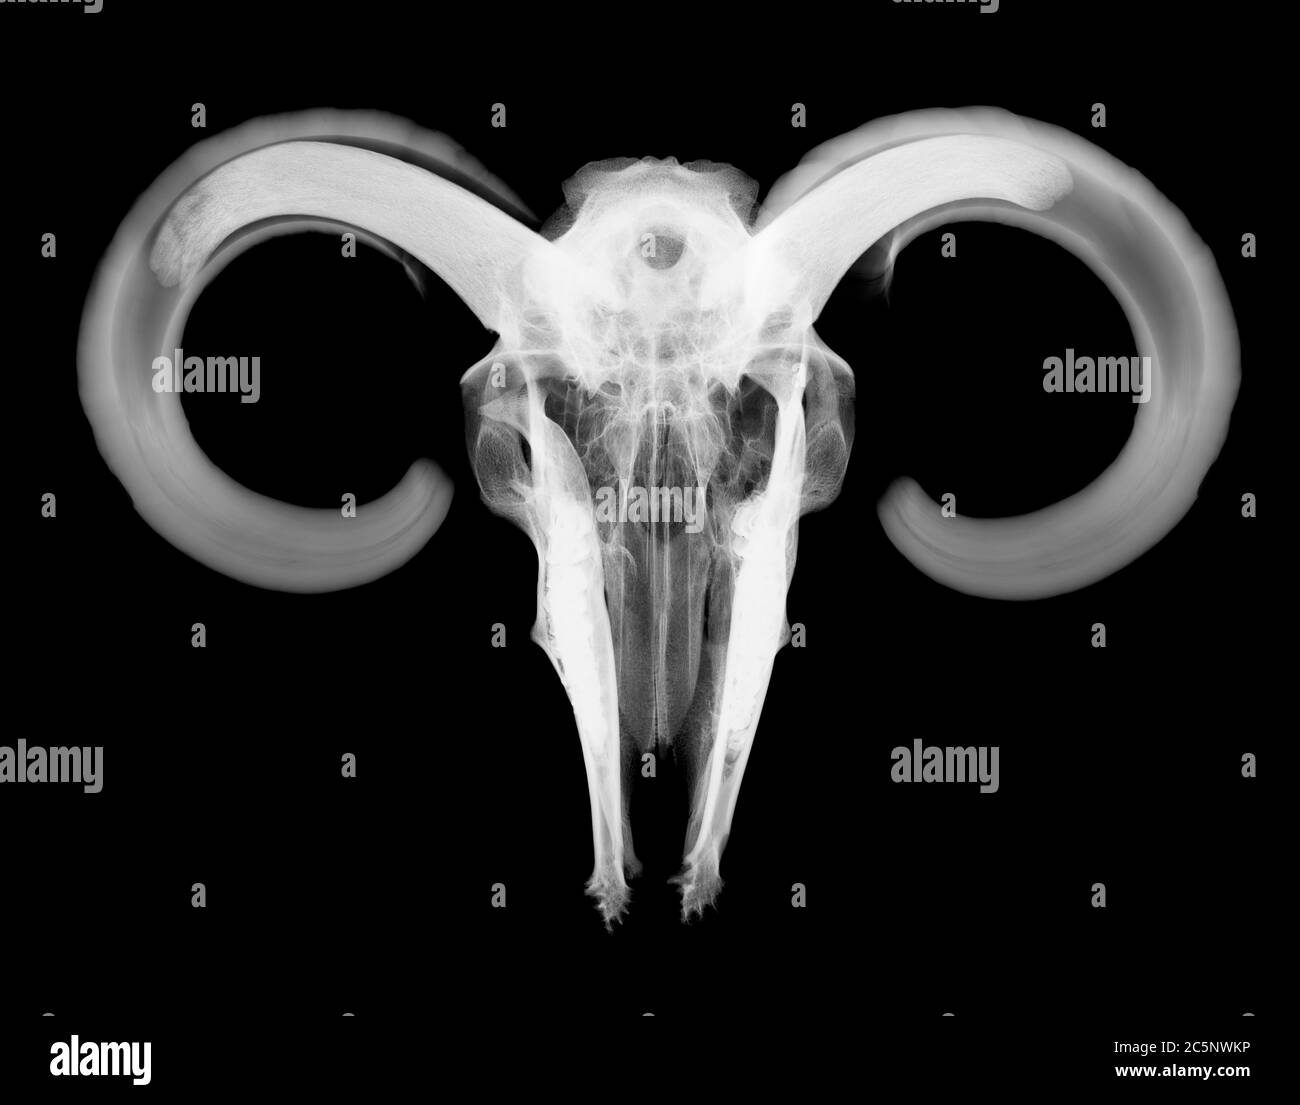 Ram skull with horns, X-ray. Stock Photo